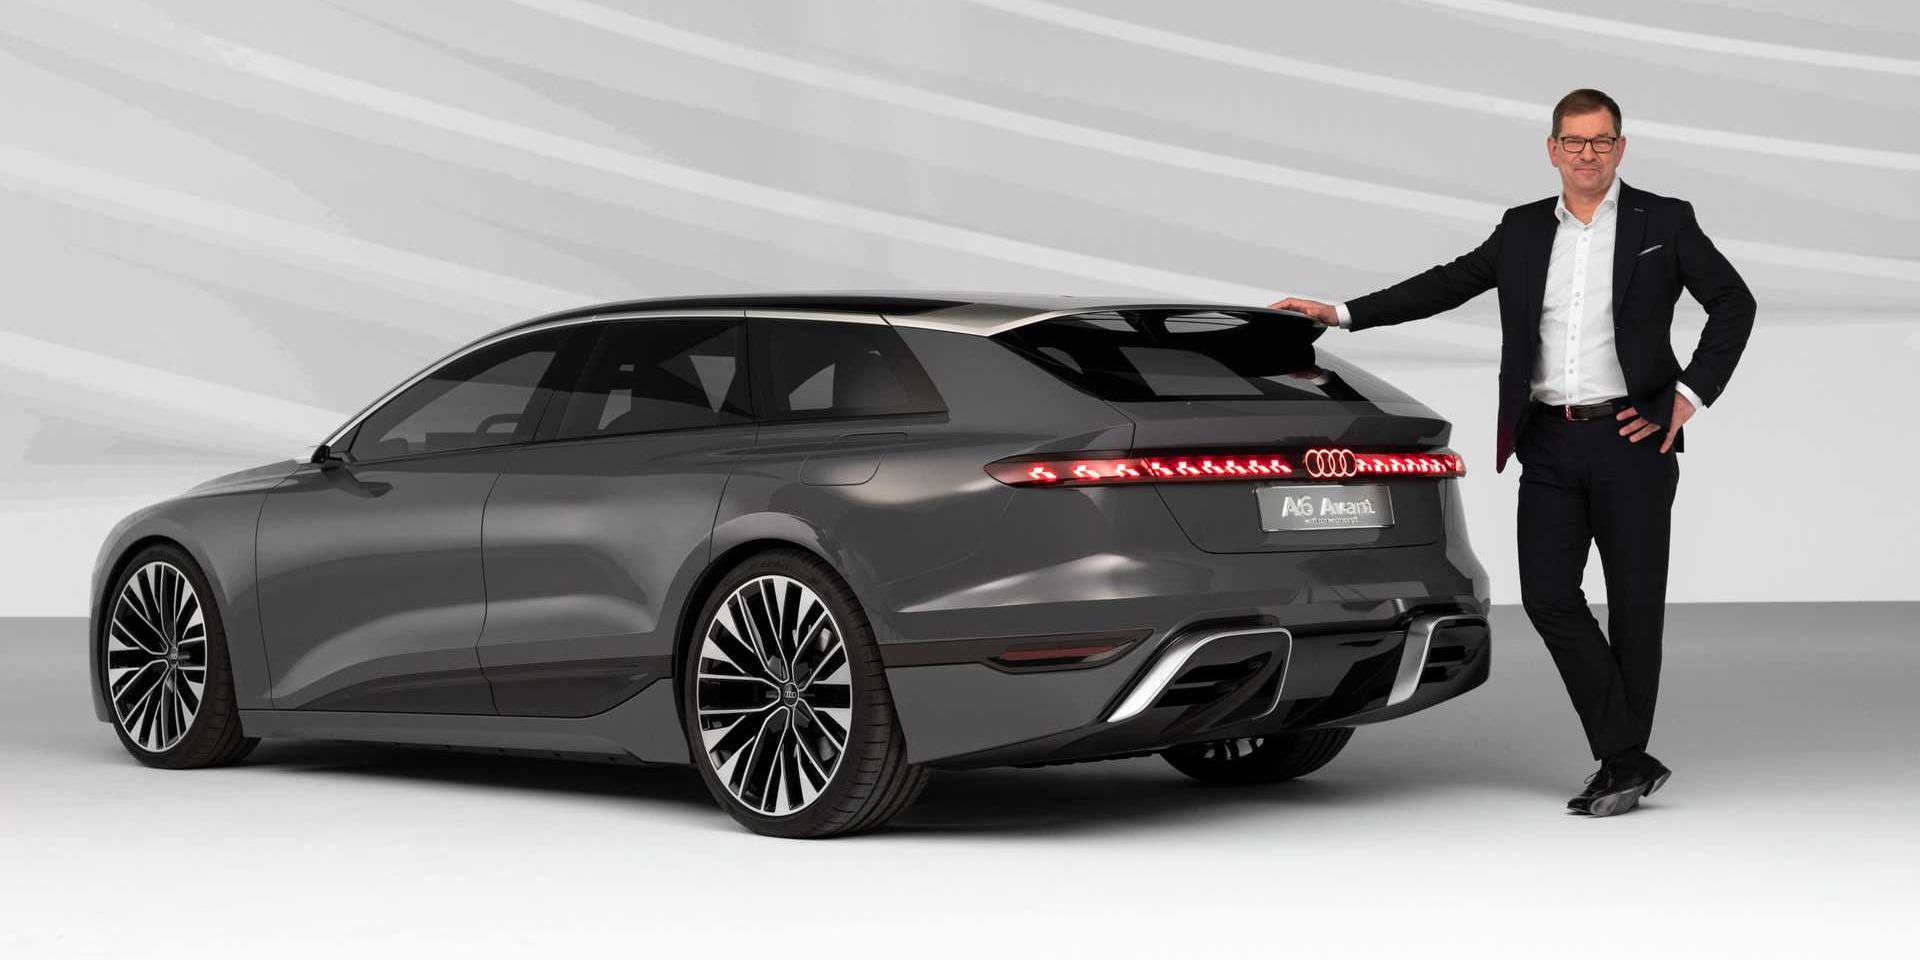 New 2023 Audi A6 Avant Concept